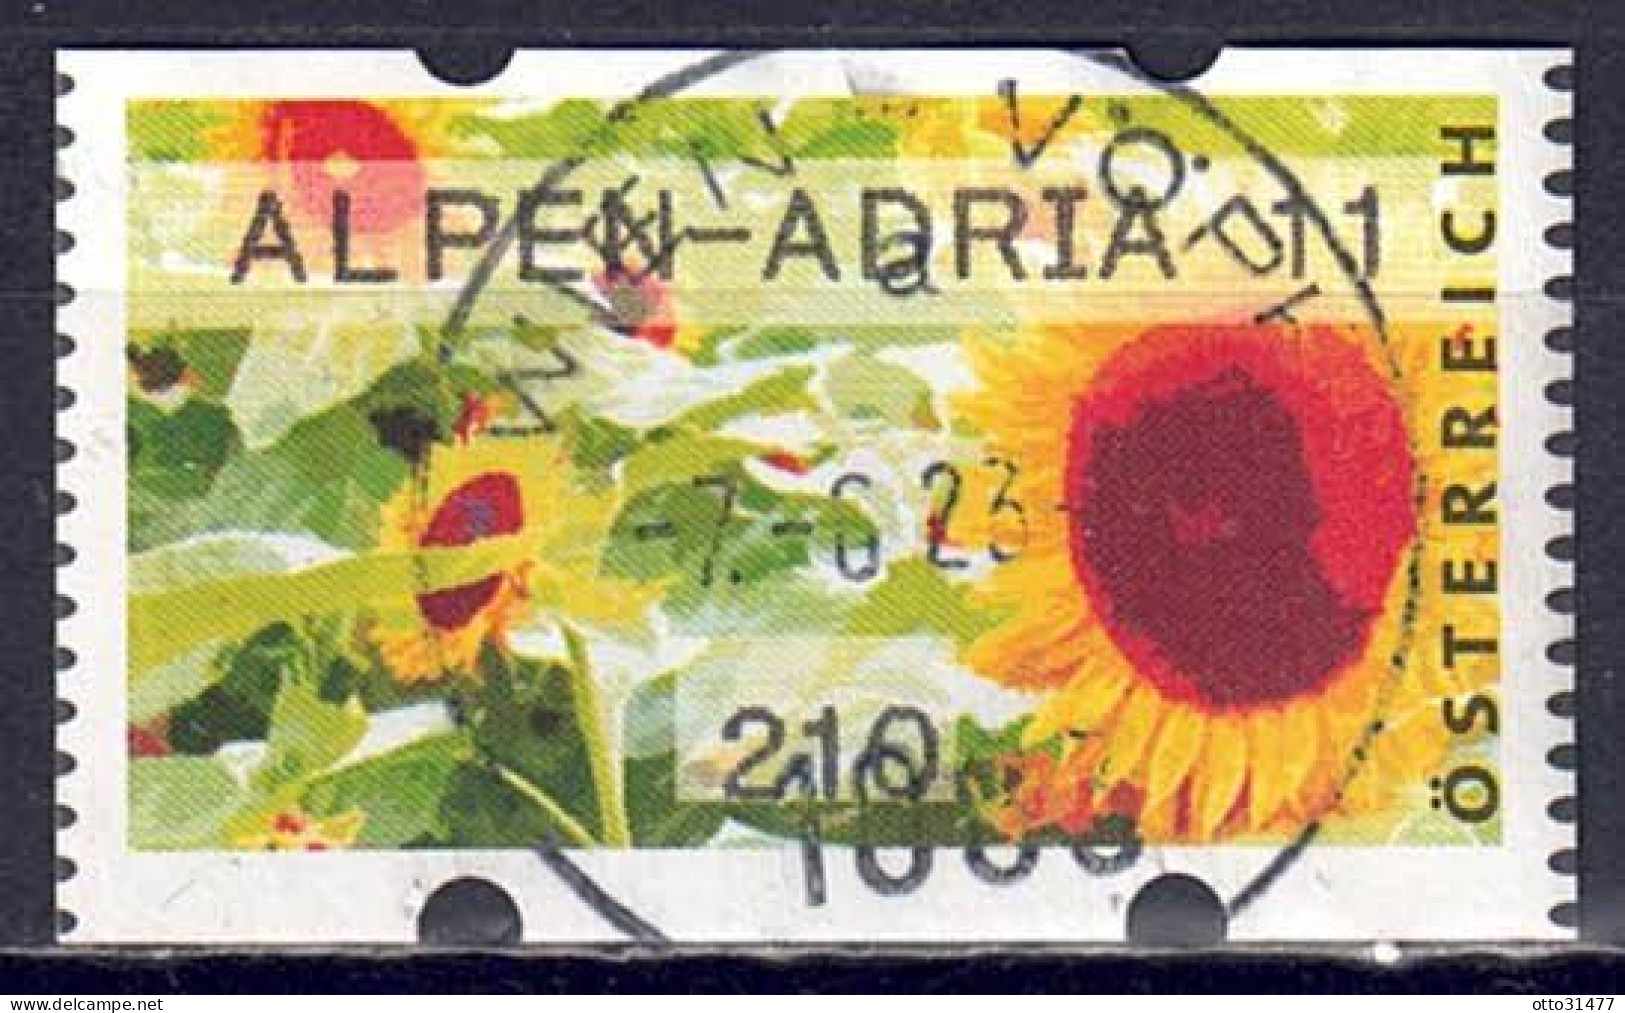 Österreich 2011 - ATM, MiNr. 20, ALPEN-ADRIA 11, Gestempelt / Used - Automatenmarken [ATM]